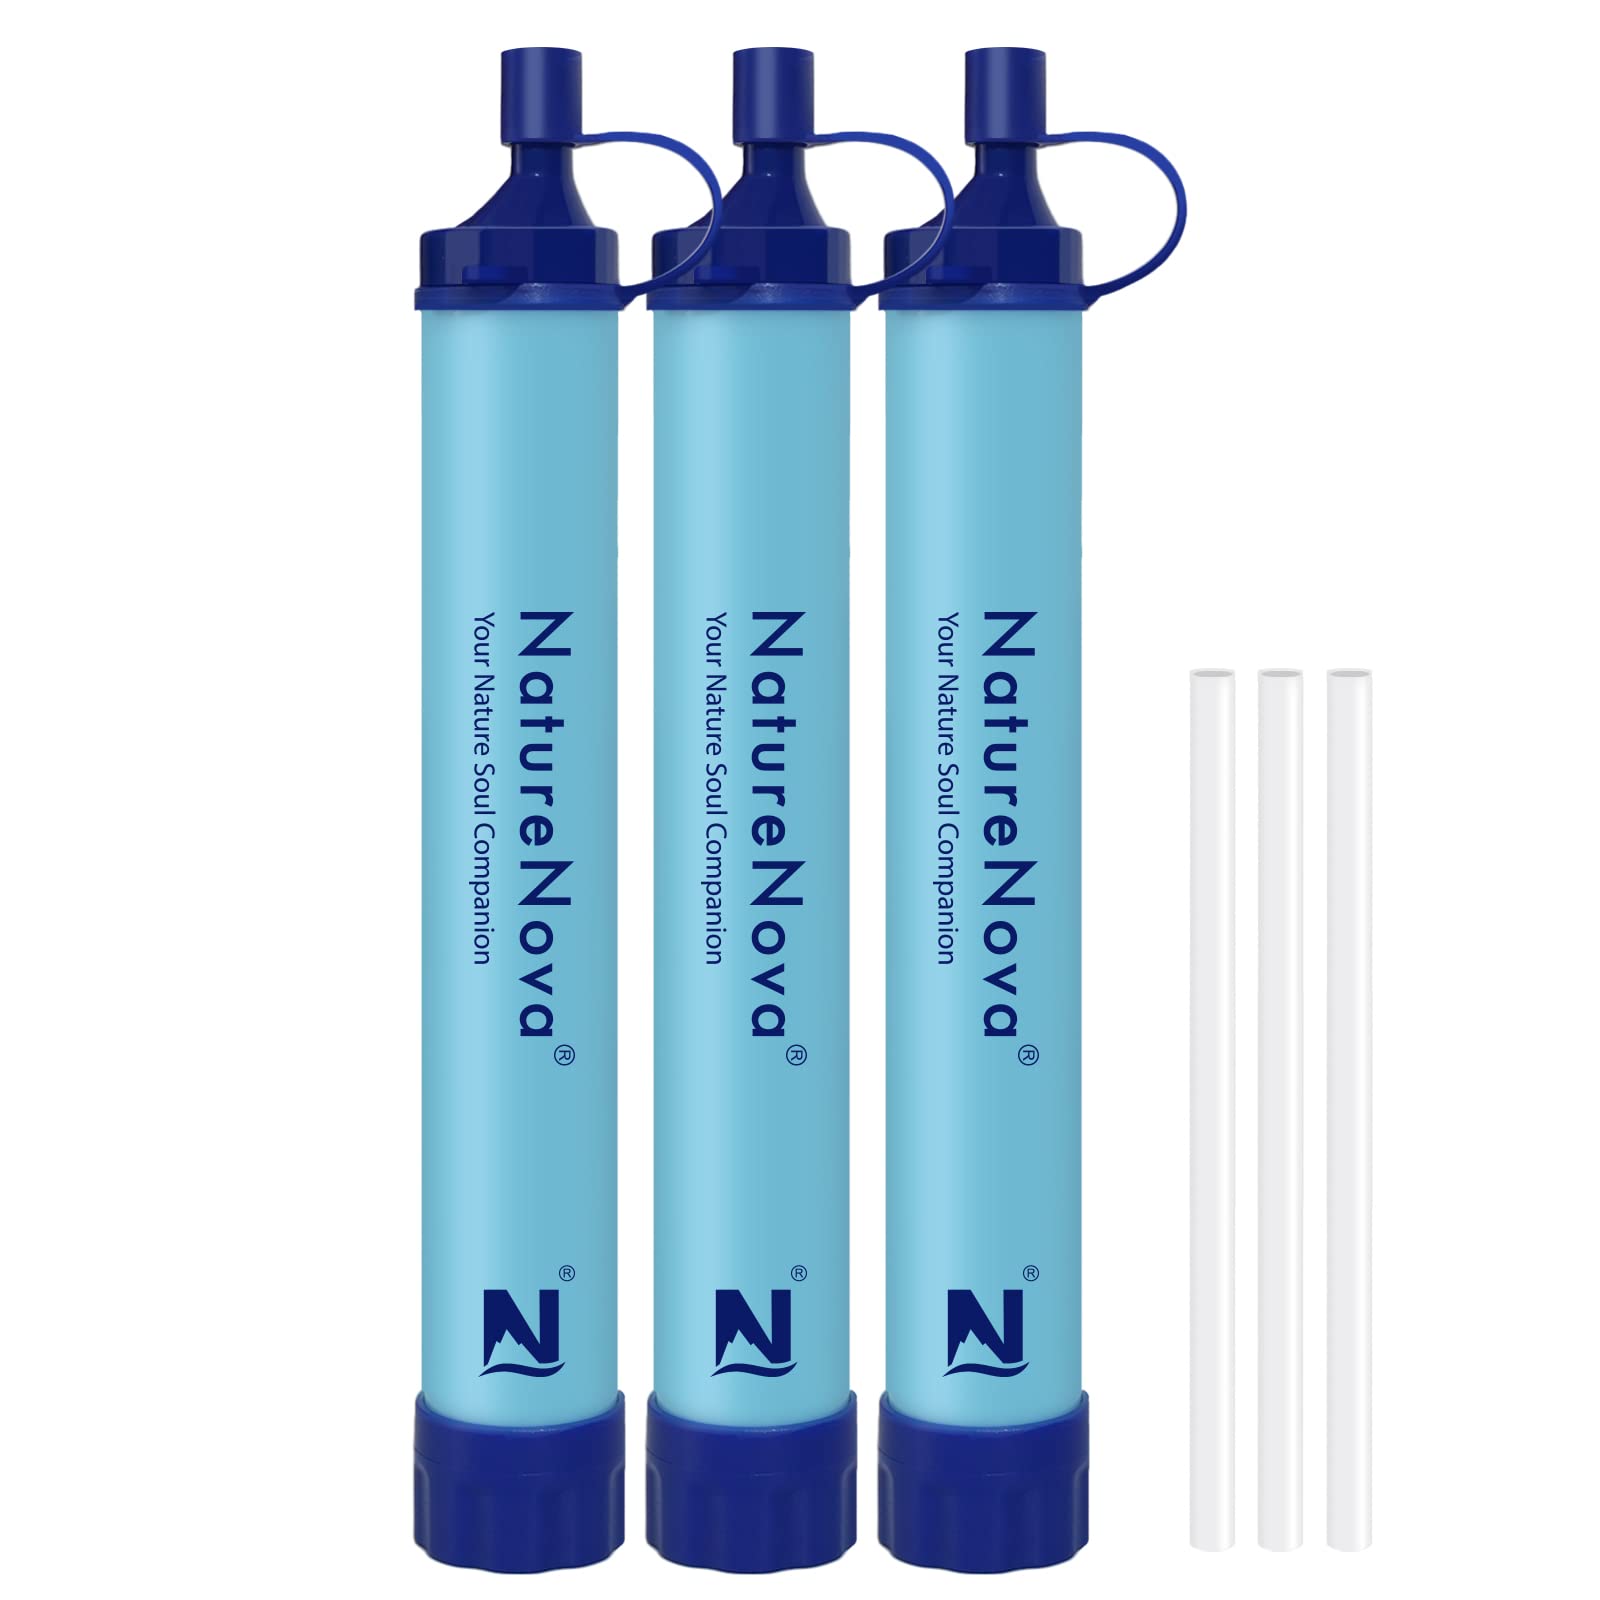 TIK Tok Persönlicher Wasserfilter Stroh Wasserreiniger Tragbare Notfall-Überlebensausrüstung für Wandern Camping Reisen (3 Stück)